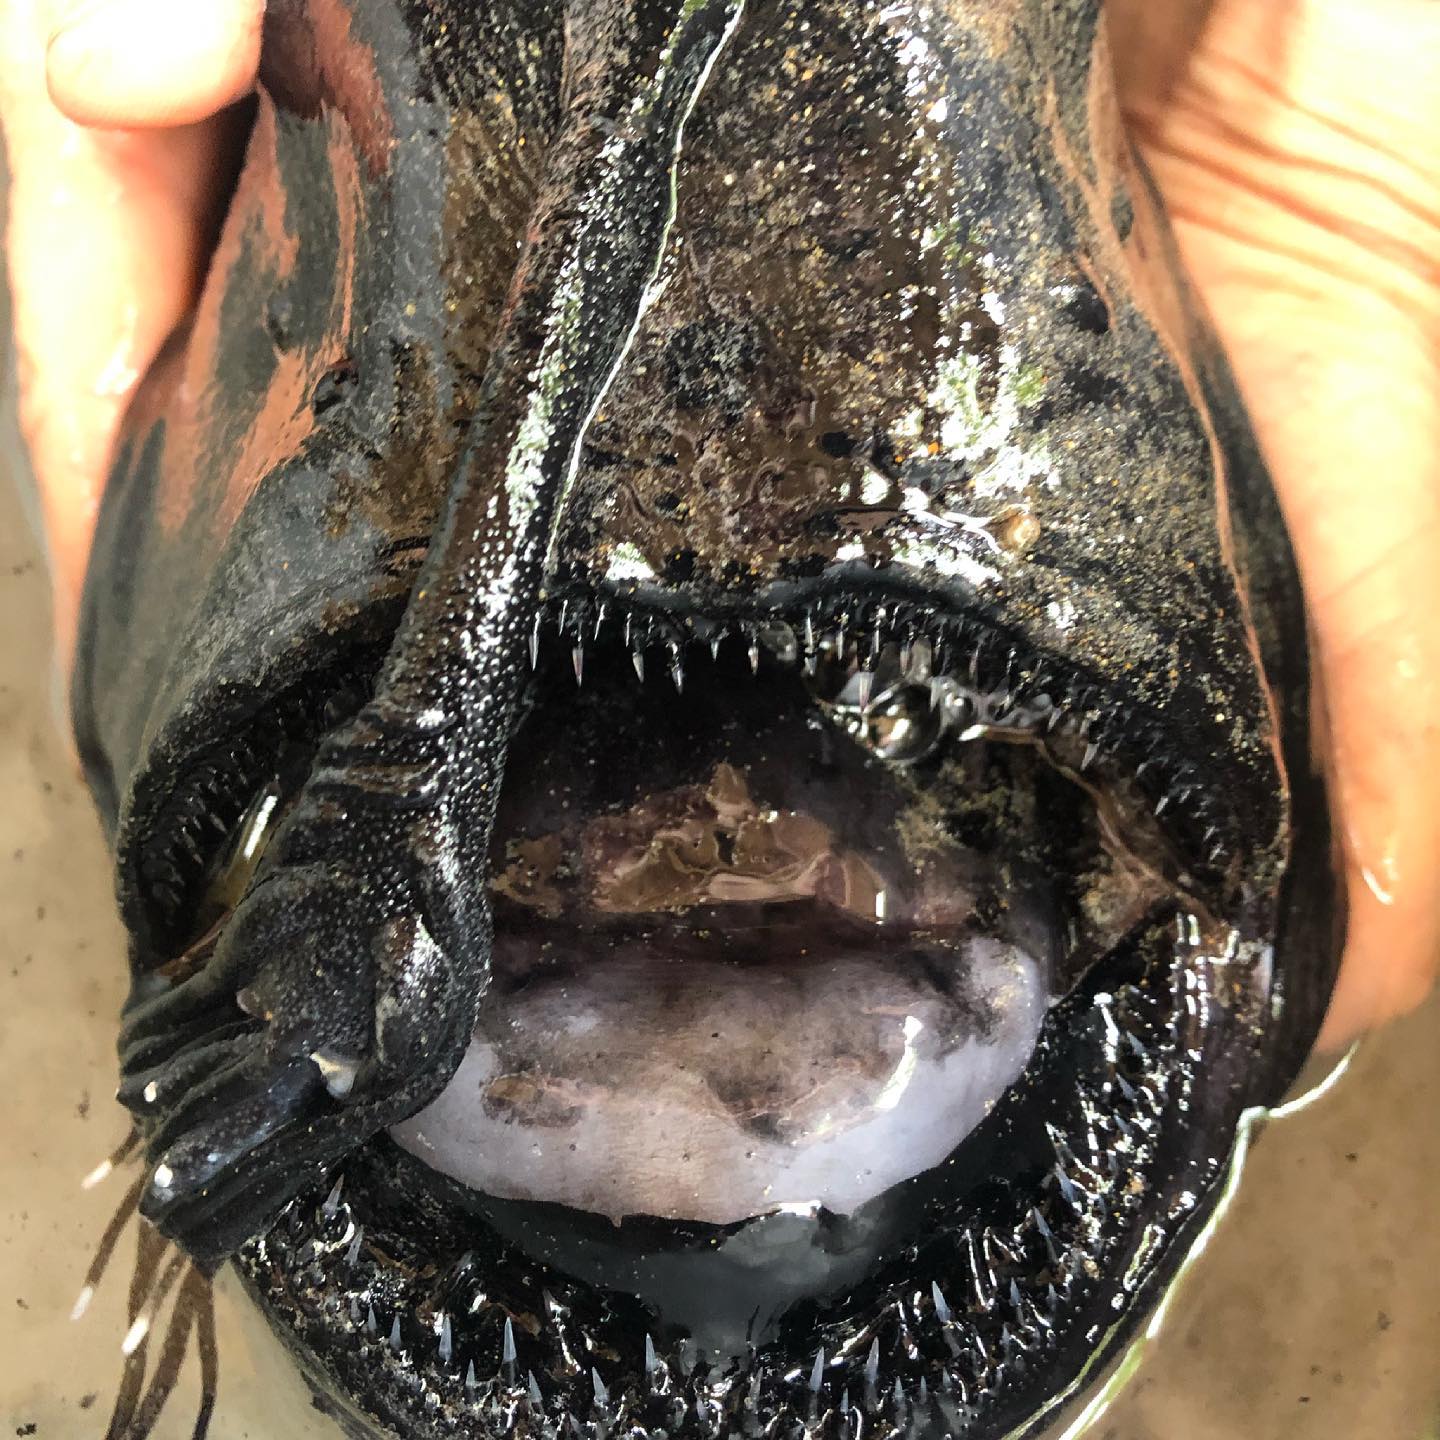 Σπάνιο ψάρι που ζει σε μεγάλα βάθη εντοπίστηκε στην καλιφορνέζικη ακτή - ΠΕΡΙΕΡΓΑ